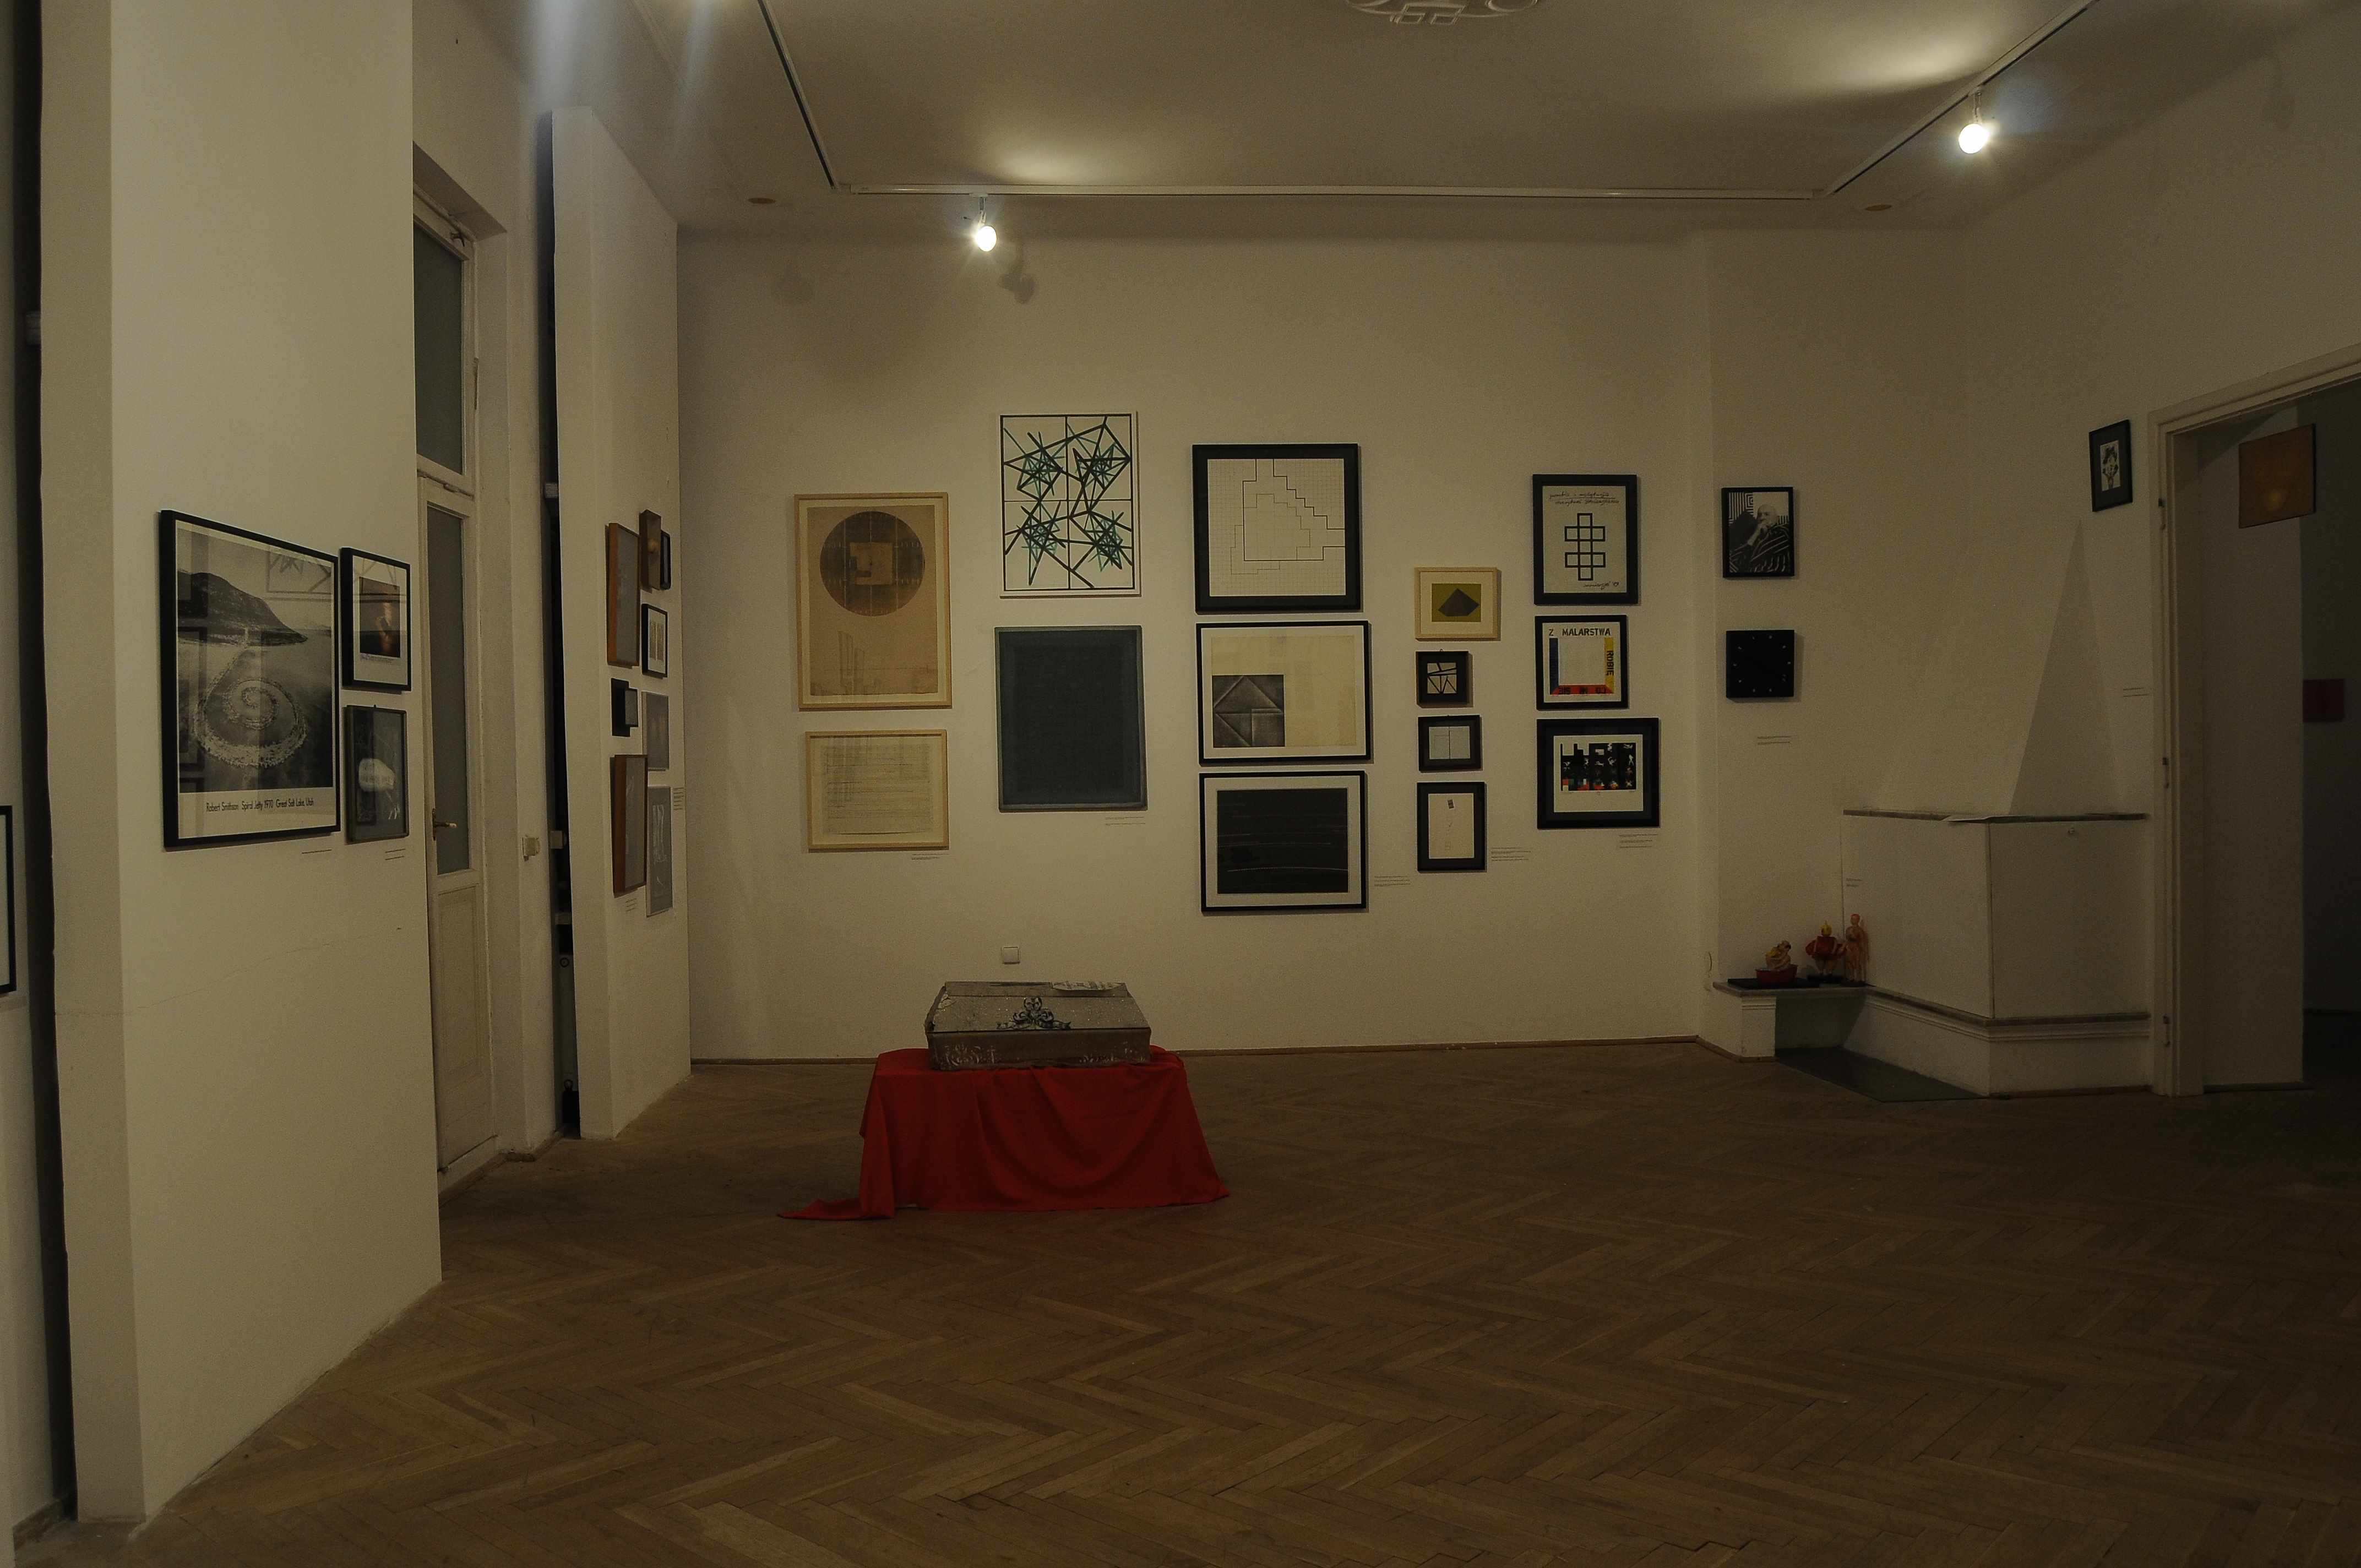 Sztuka wymiany. Kolekcja Józefa Robakowskiego, Fundacja Profile 2013